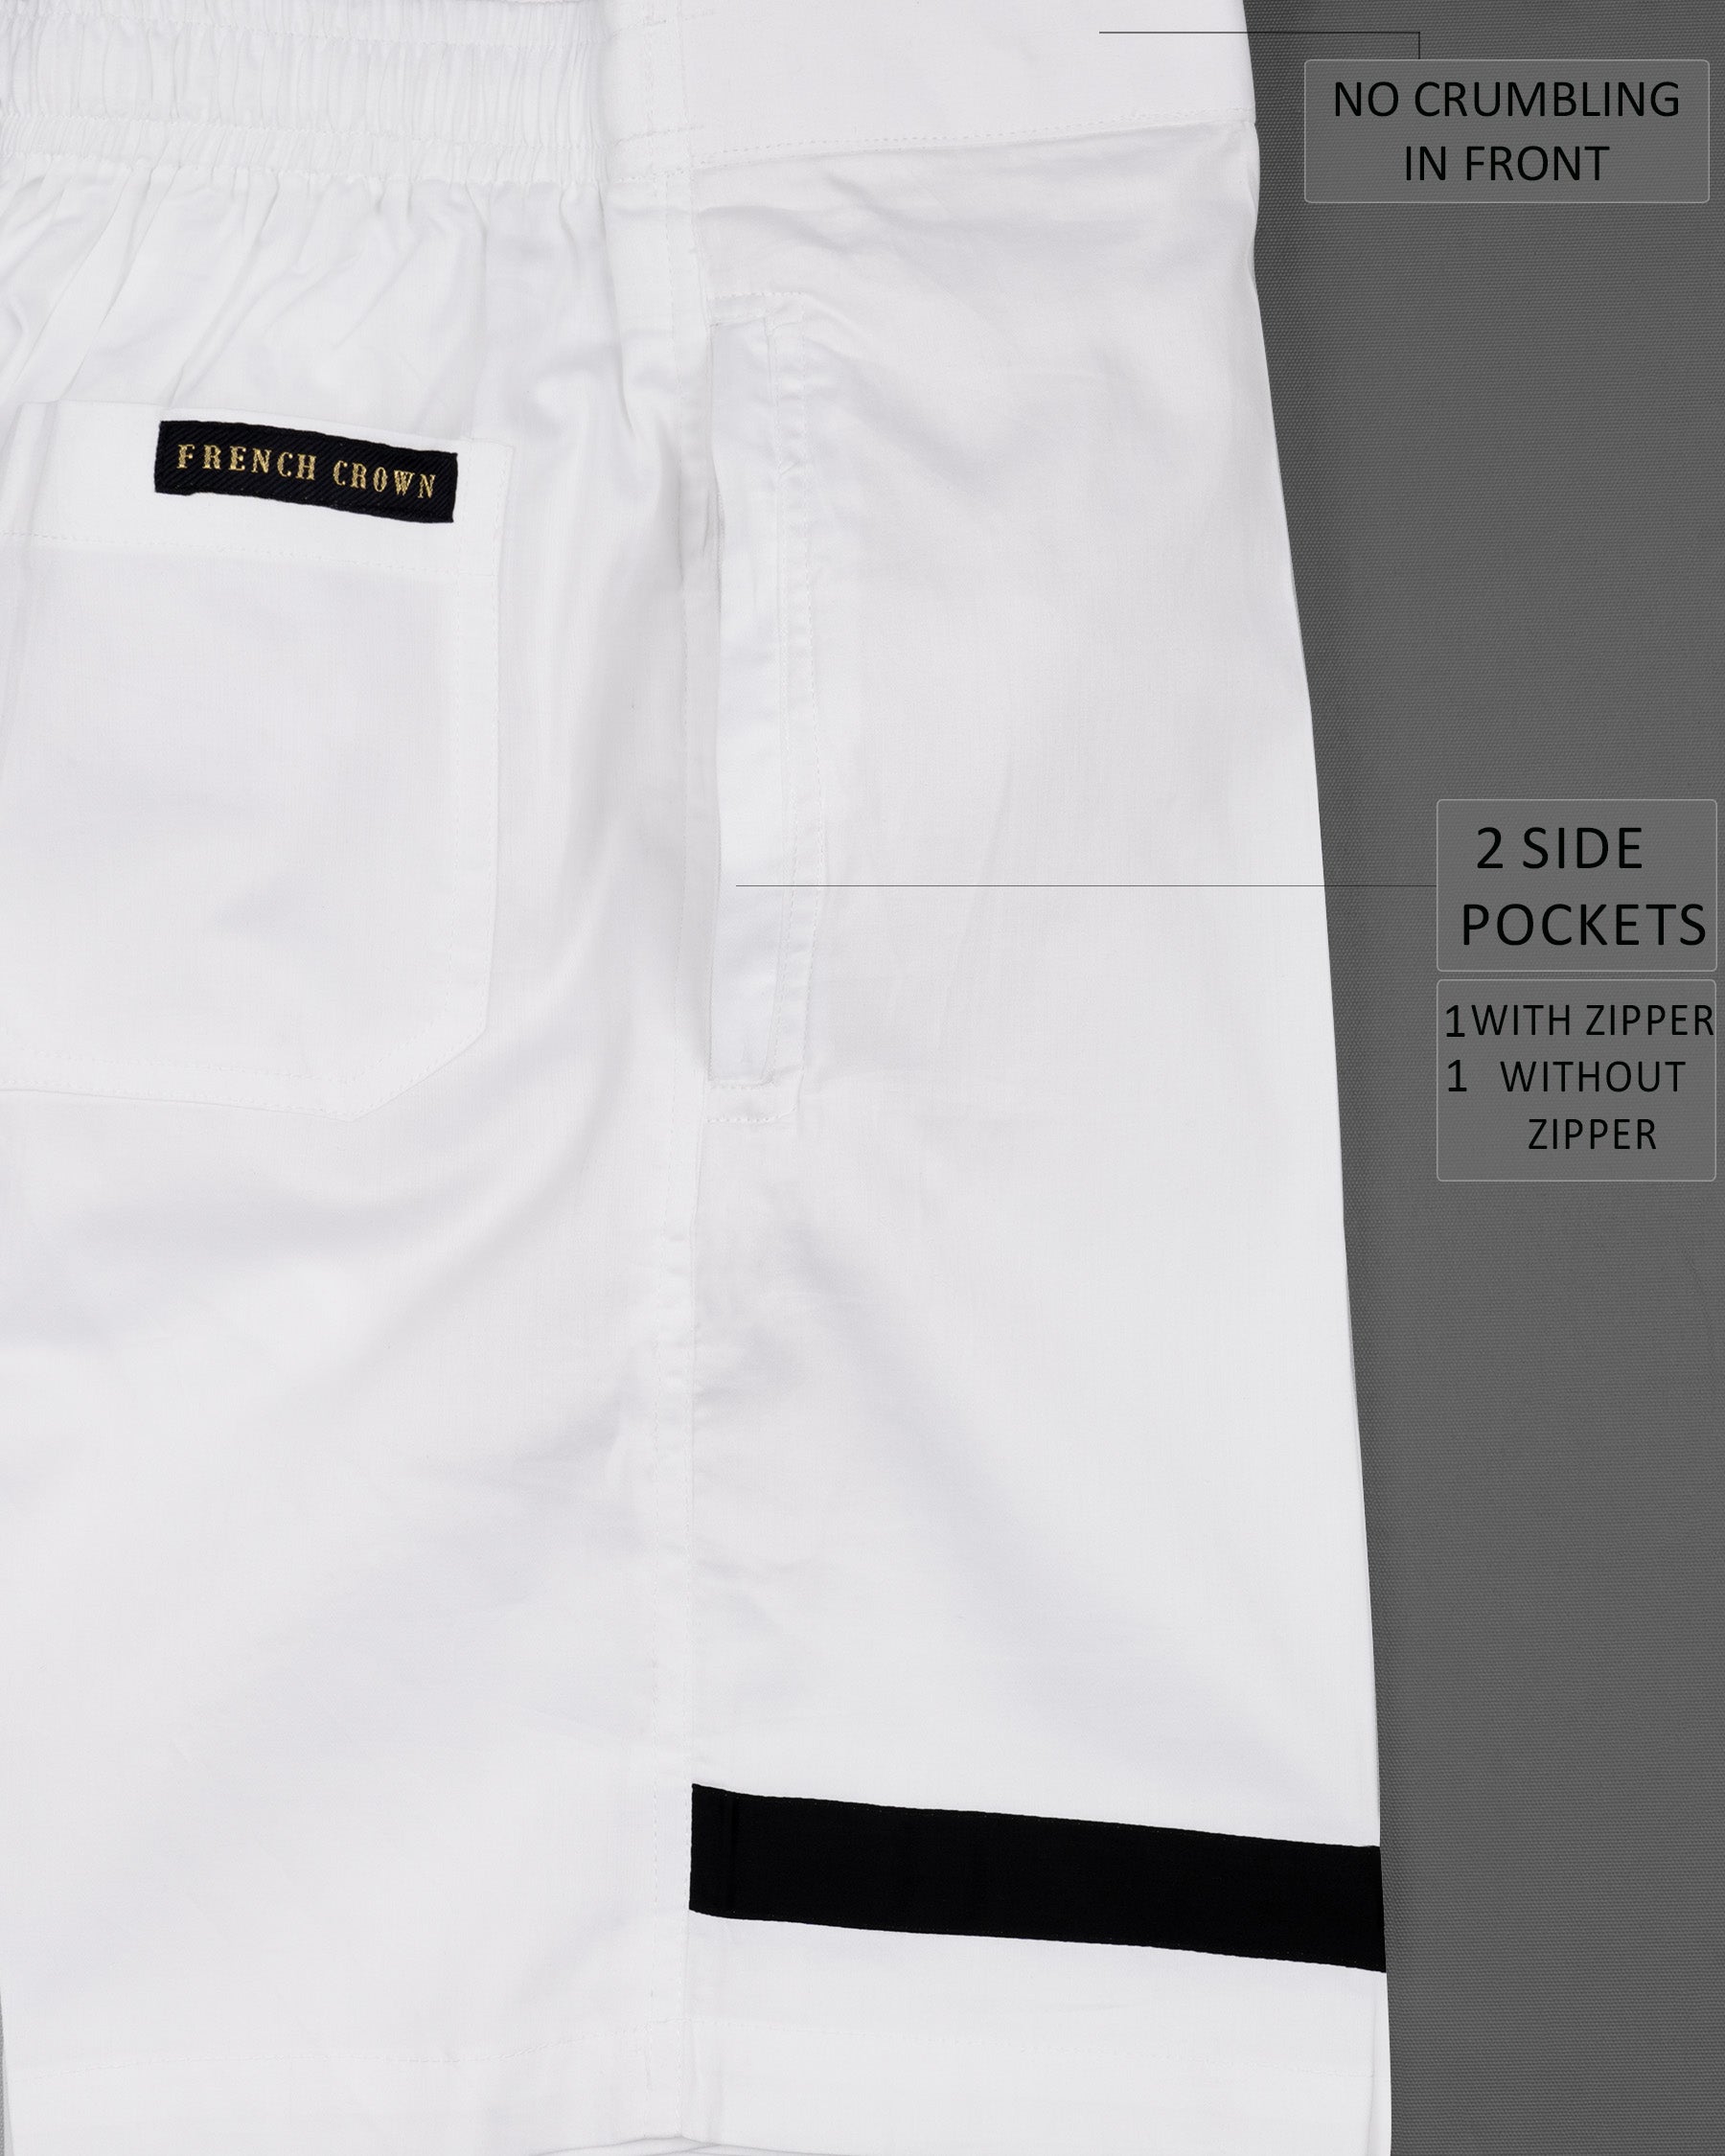 Bright White with Black Striped Super Soft Premium Cotton Designer Shorts SR152-28, SR152-30, SR152-32, SR152-34, SR152-36, SR152-38, SR152-40, SR152-42, SR152-44